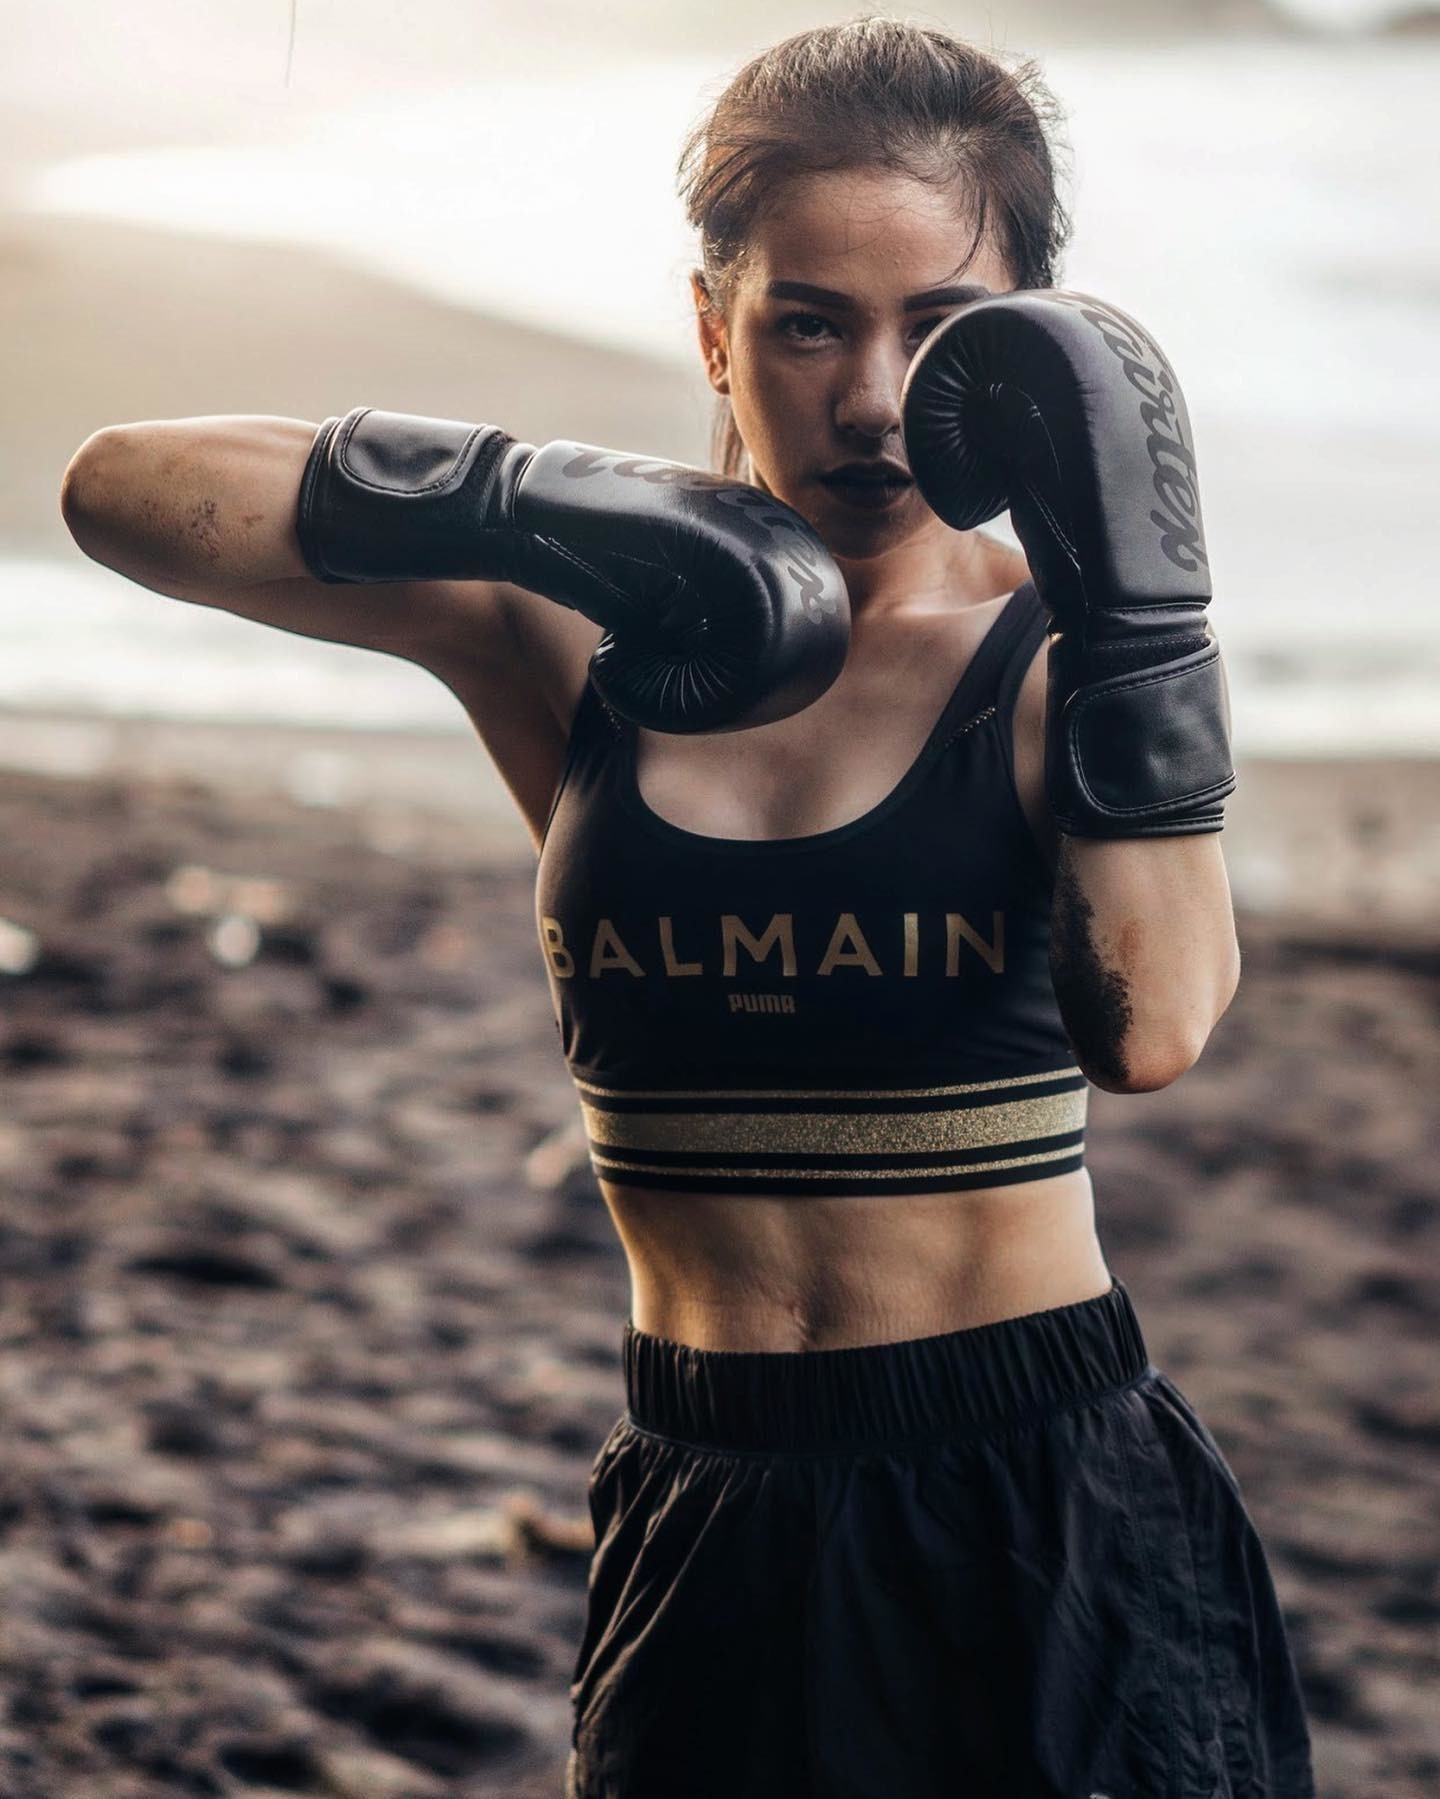 Boxerin in kurzer schwarzer Hose und Balmain x PUMA Sport-BH mit schwarten Boxhandschuhen